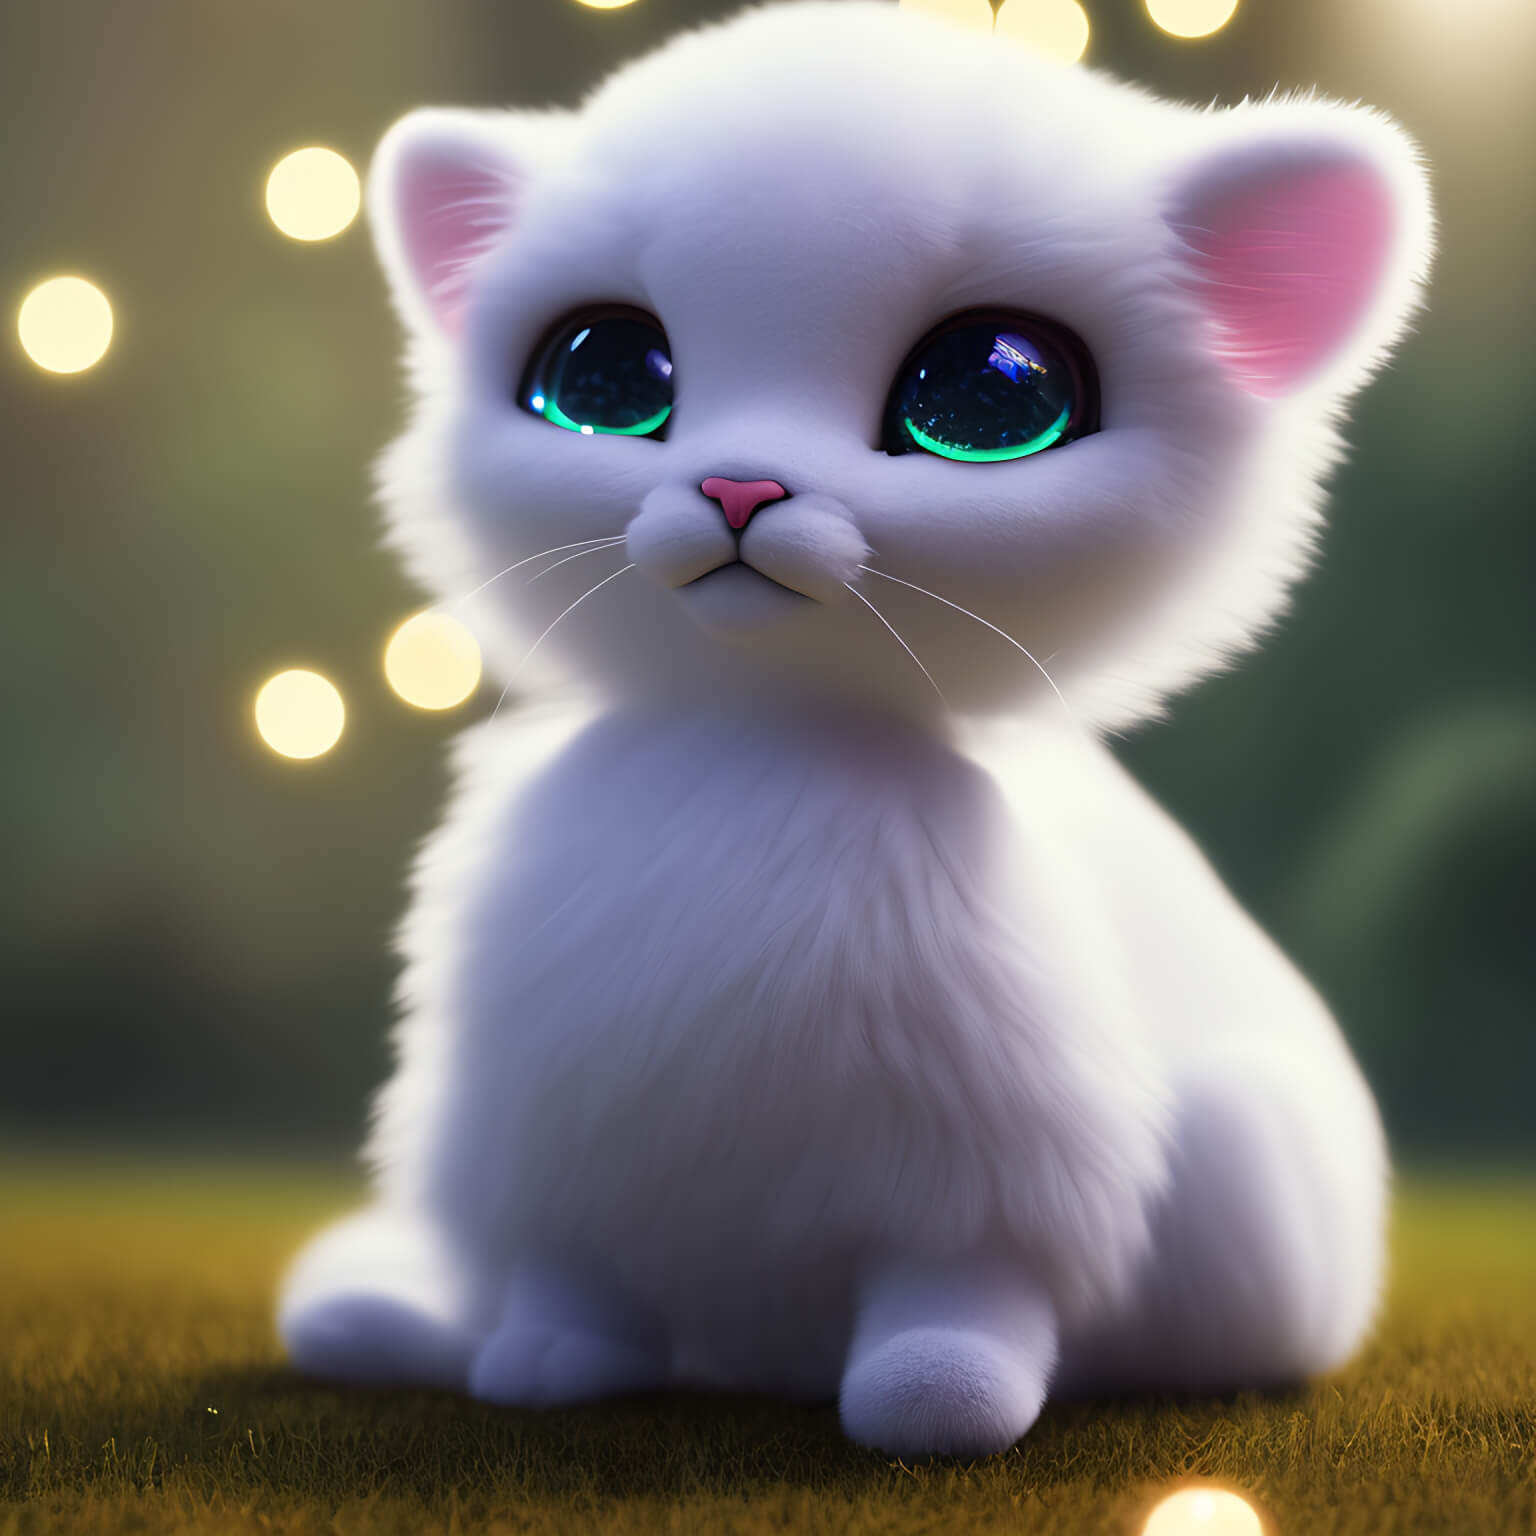 Ein KI Bild von einer niedlichen kleinen Katze mit grünen Augen